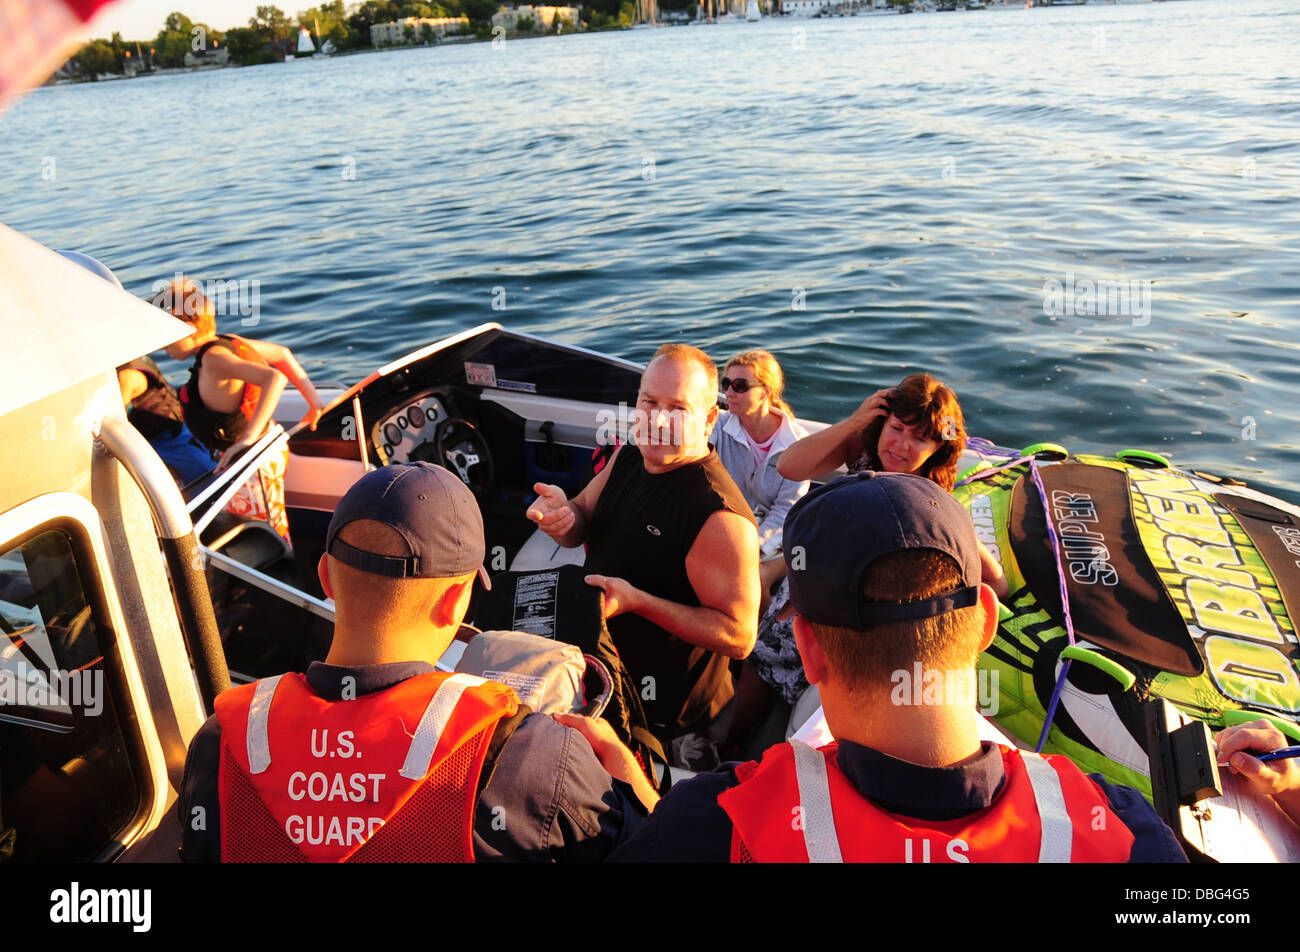 Fireman Jared Lawhead, un imbarco teammember dalla Stazione della Guardia Costiera Niagara, ispeziona un giubbotto di salvataggio durante una sicurezza di salire a bordo di un battello da diporto sul fiume Niagara in prossimità di Youngstown, N.Y., luglio 26, 2013. La guardia costiera conduce la sicurezza Foto Stock